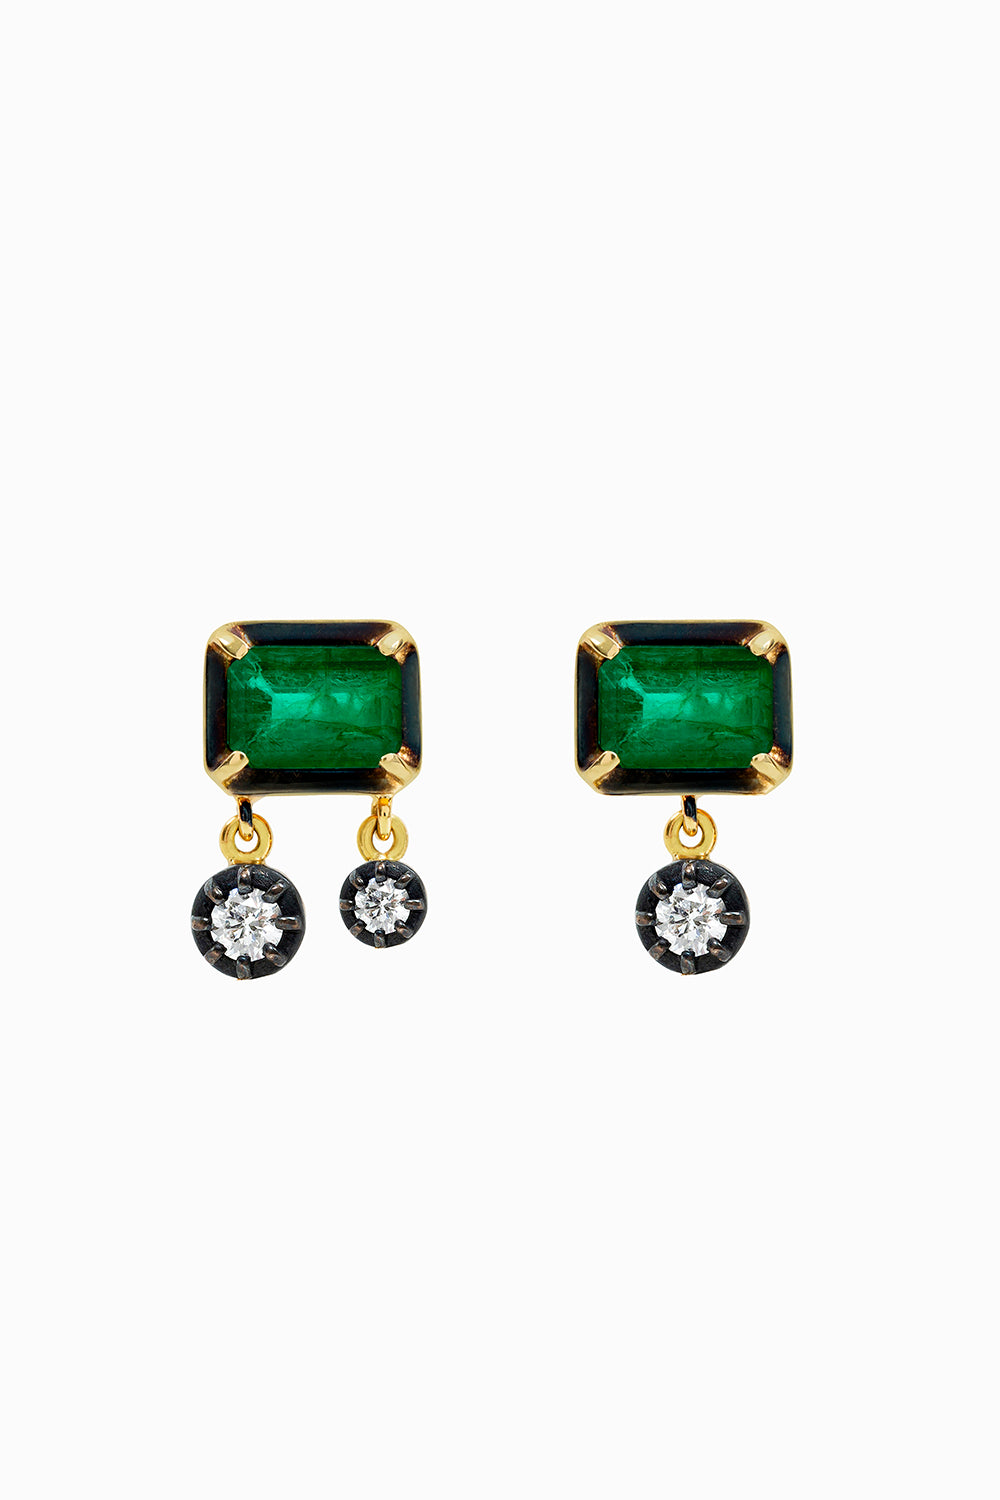 Emerald & Midnight earrings